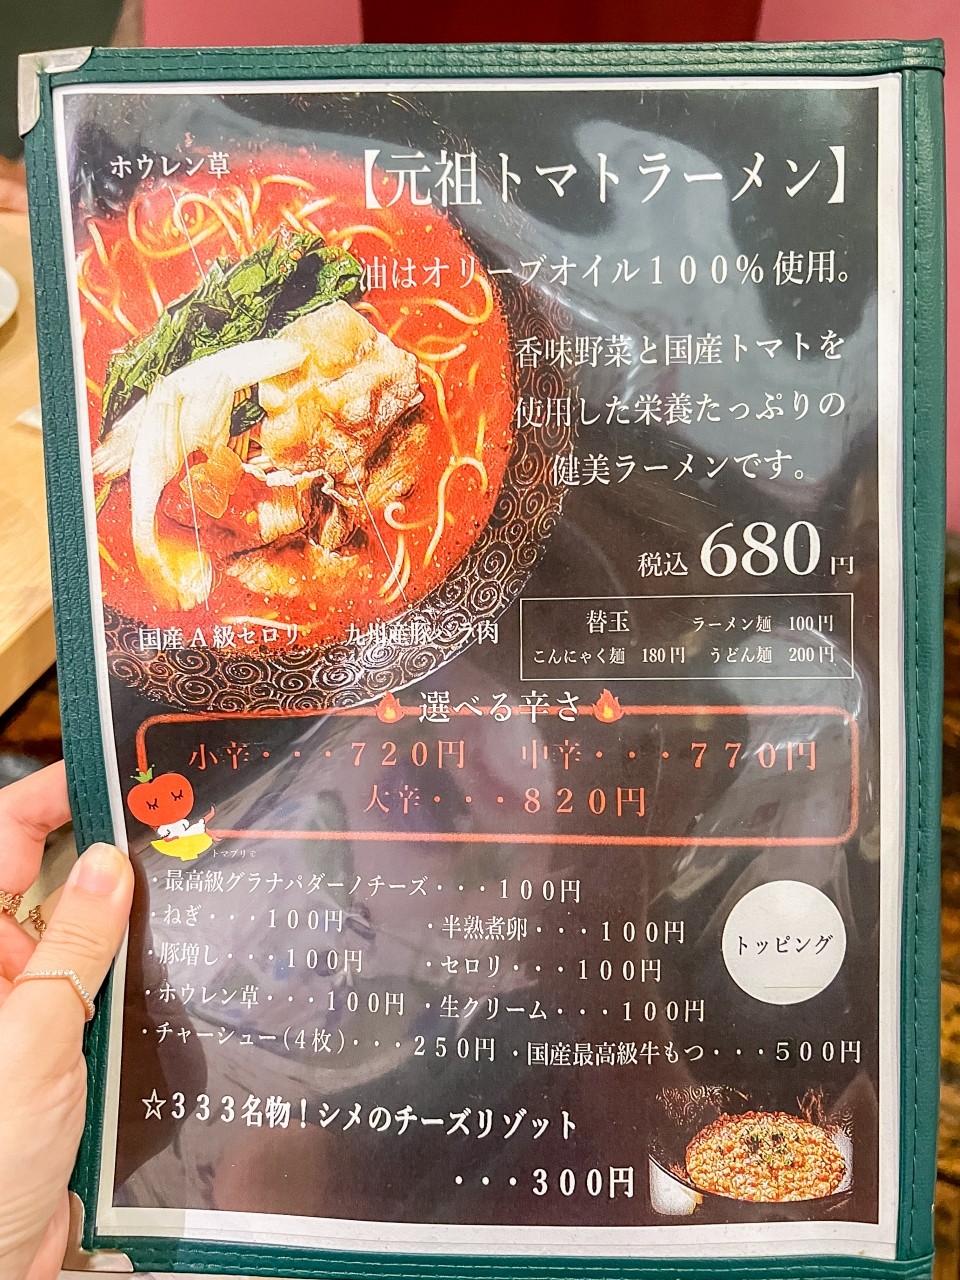 일본 후쿠오카 맛집 : 후쿠오카 라멘 텐진 모츠나베 산미